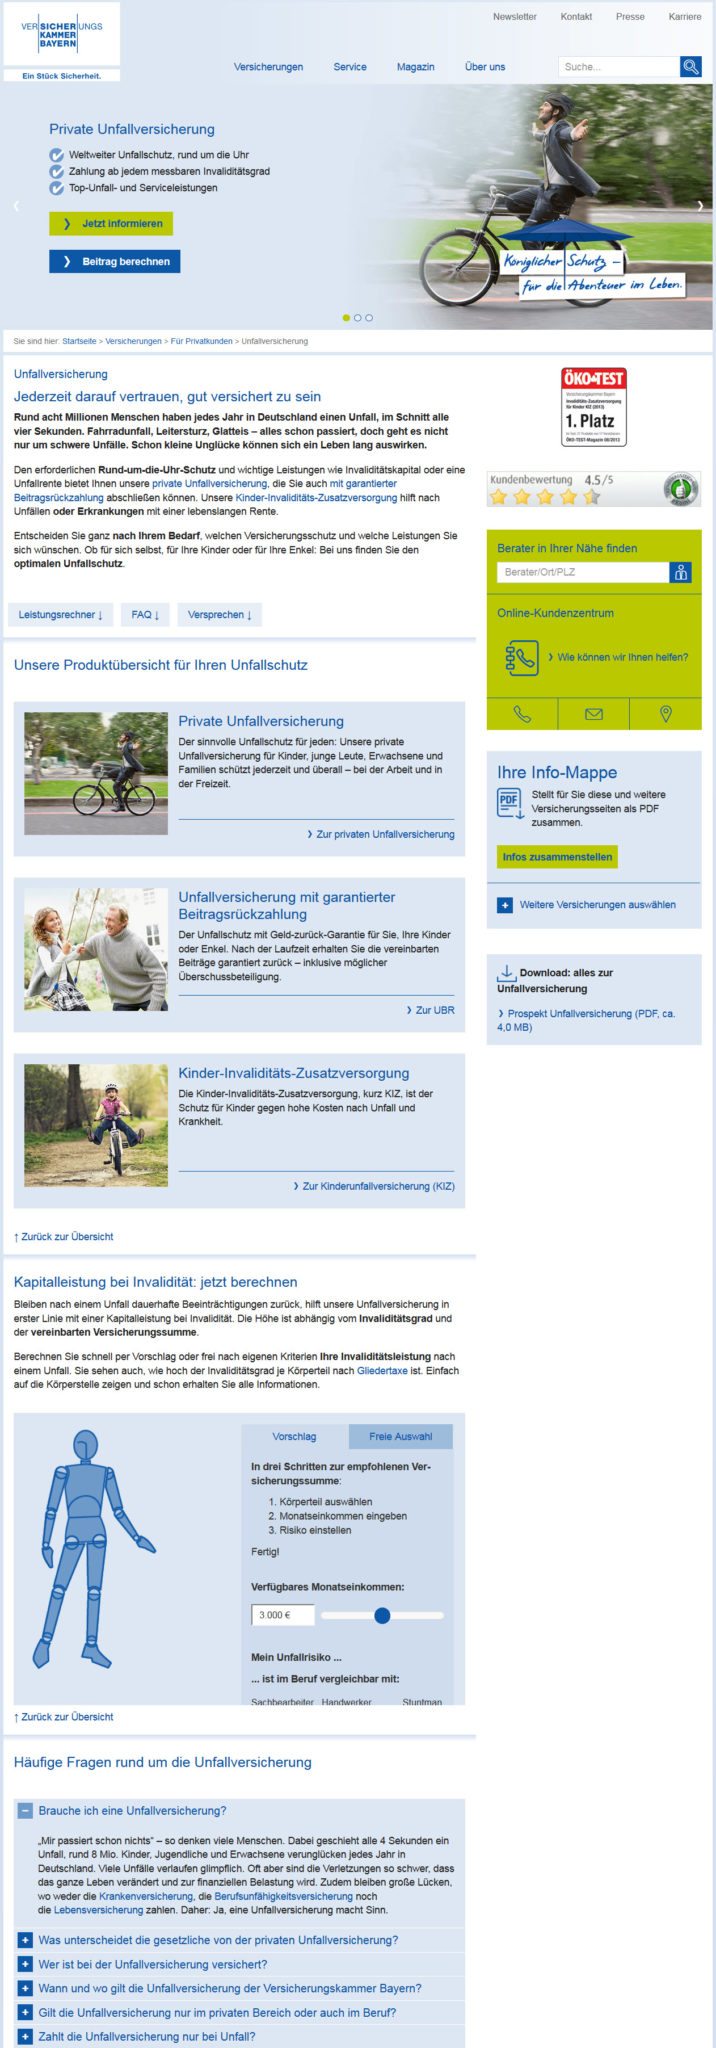 VKB: Private Unfallversicherung bei der Versicherungskammer Bayern (Screenshot https://www.vkb.de/content/versicherungen/privatkunden/unfallversicherung/ in 2016)